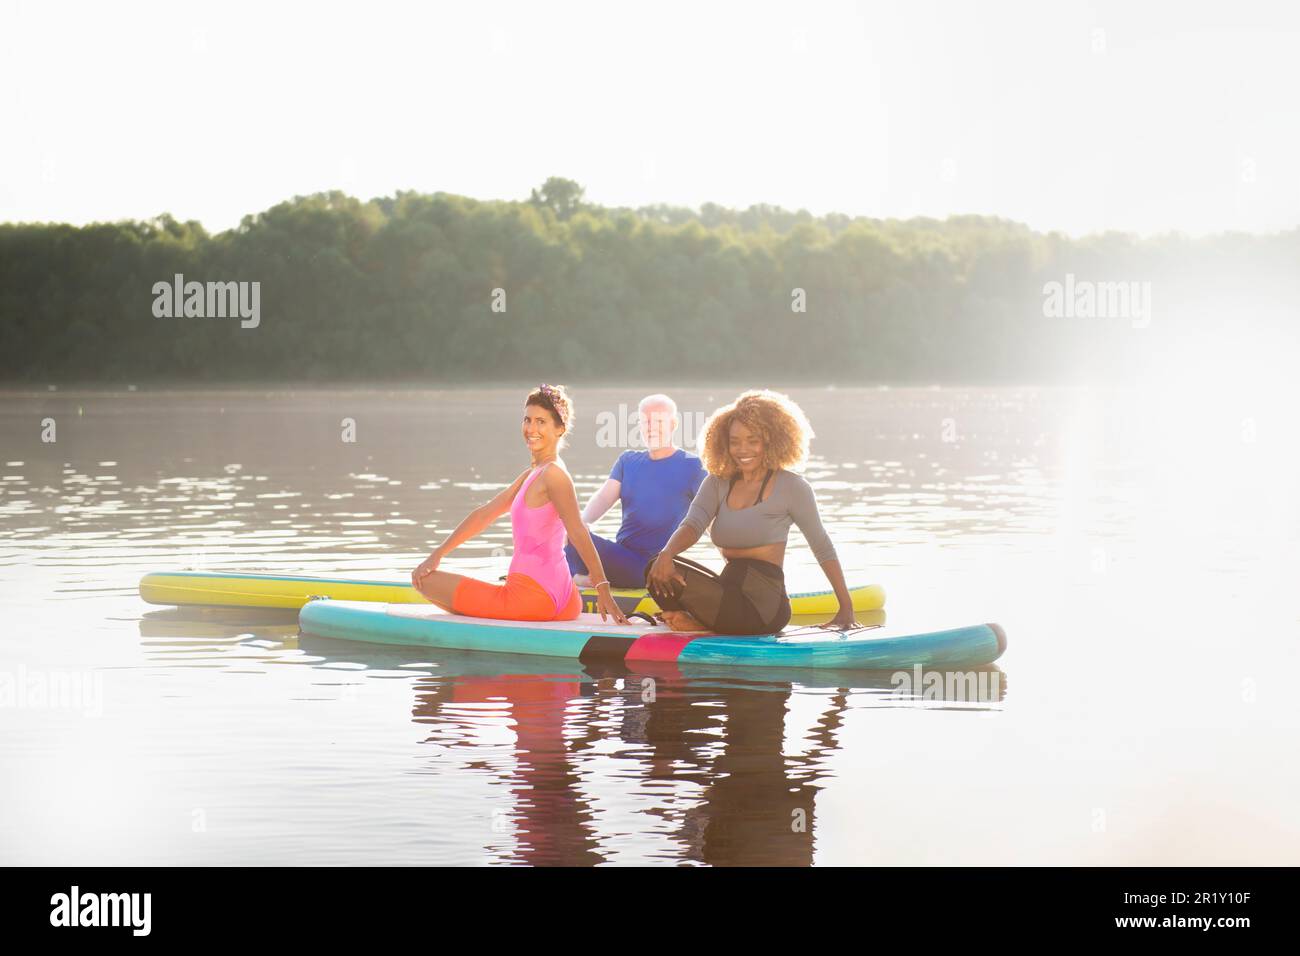 Psychisches Wohlbefinden annehmen: Gruppenfindung von Entspannung auf SUP-Boards Stockfoto